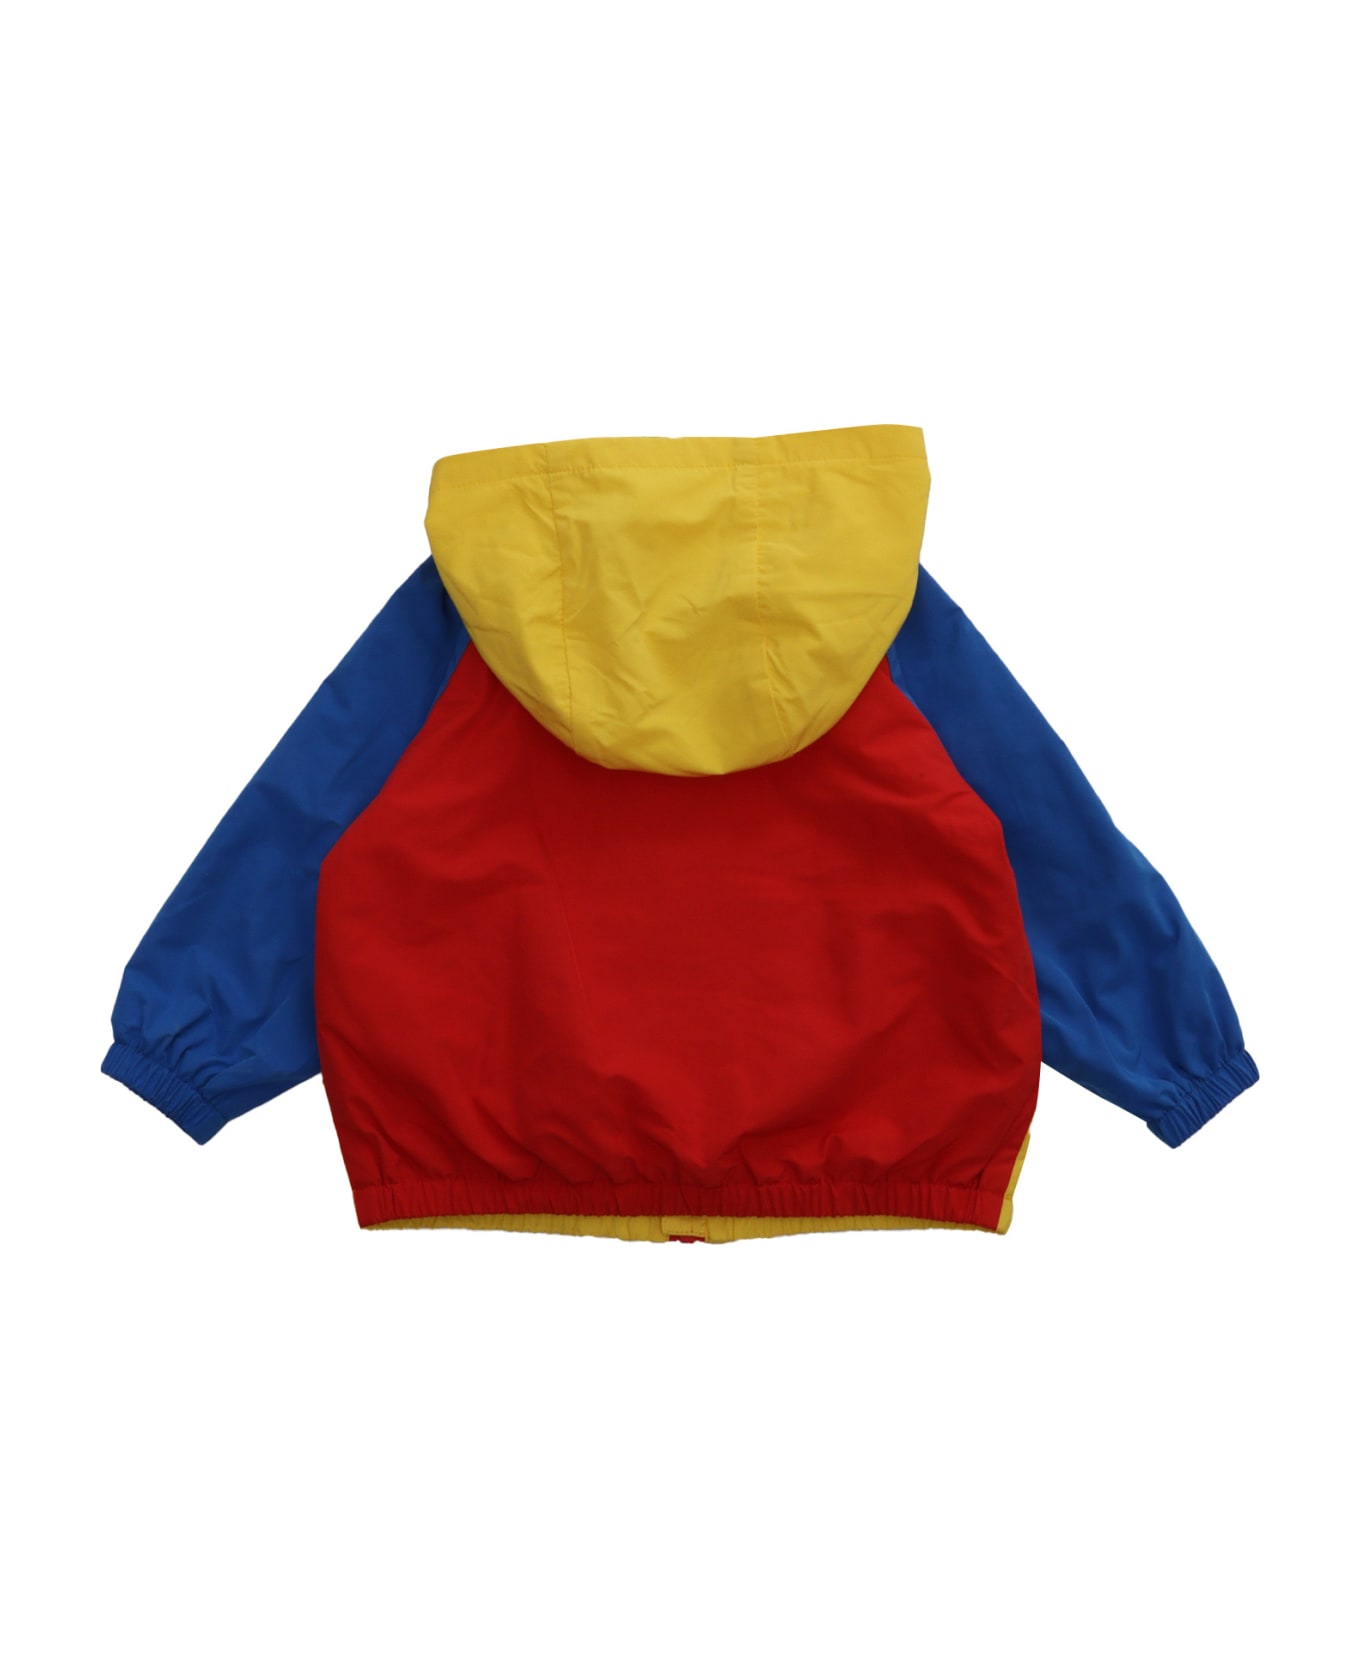 Moschino Multicolor Jacket - MULTICOLOR